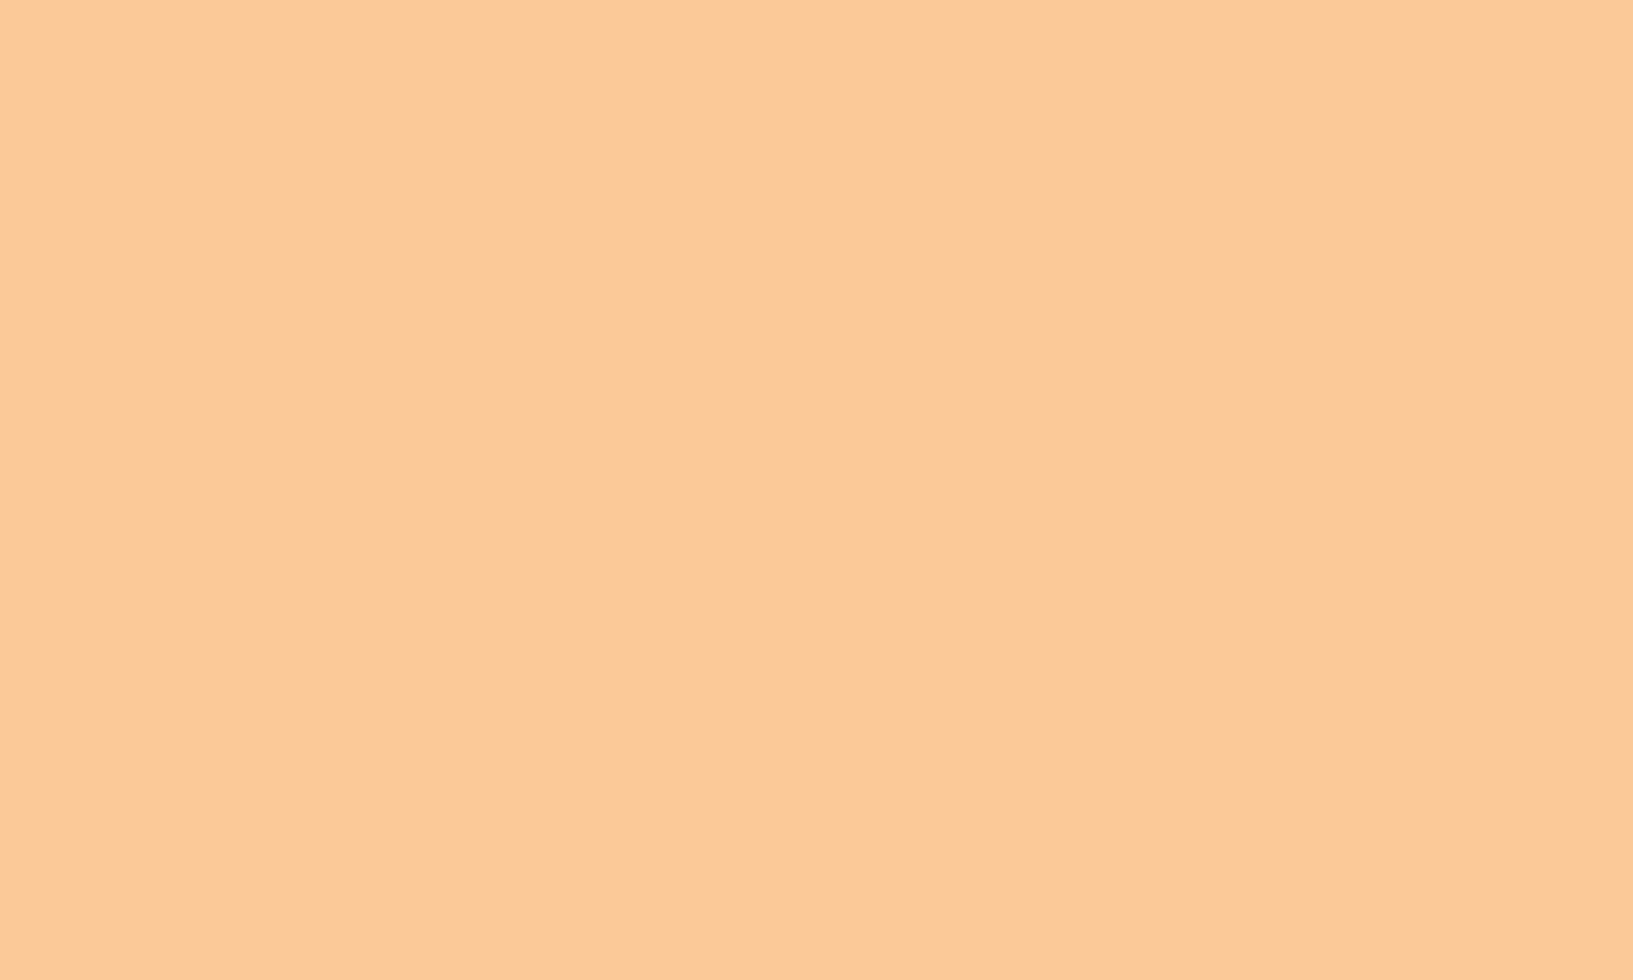 Pastel orange: Màu sắc Pastel Orange là một trong những màu sắc nổi bật và trẻ trung. Các bức ảnh sử dụng Pastel Orange sẽ đem lại một sự mới mẻ và tươi vui. Hãy thưởng thức những hình ảnh rực rỡ này!